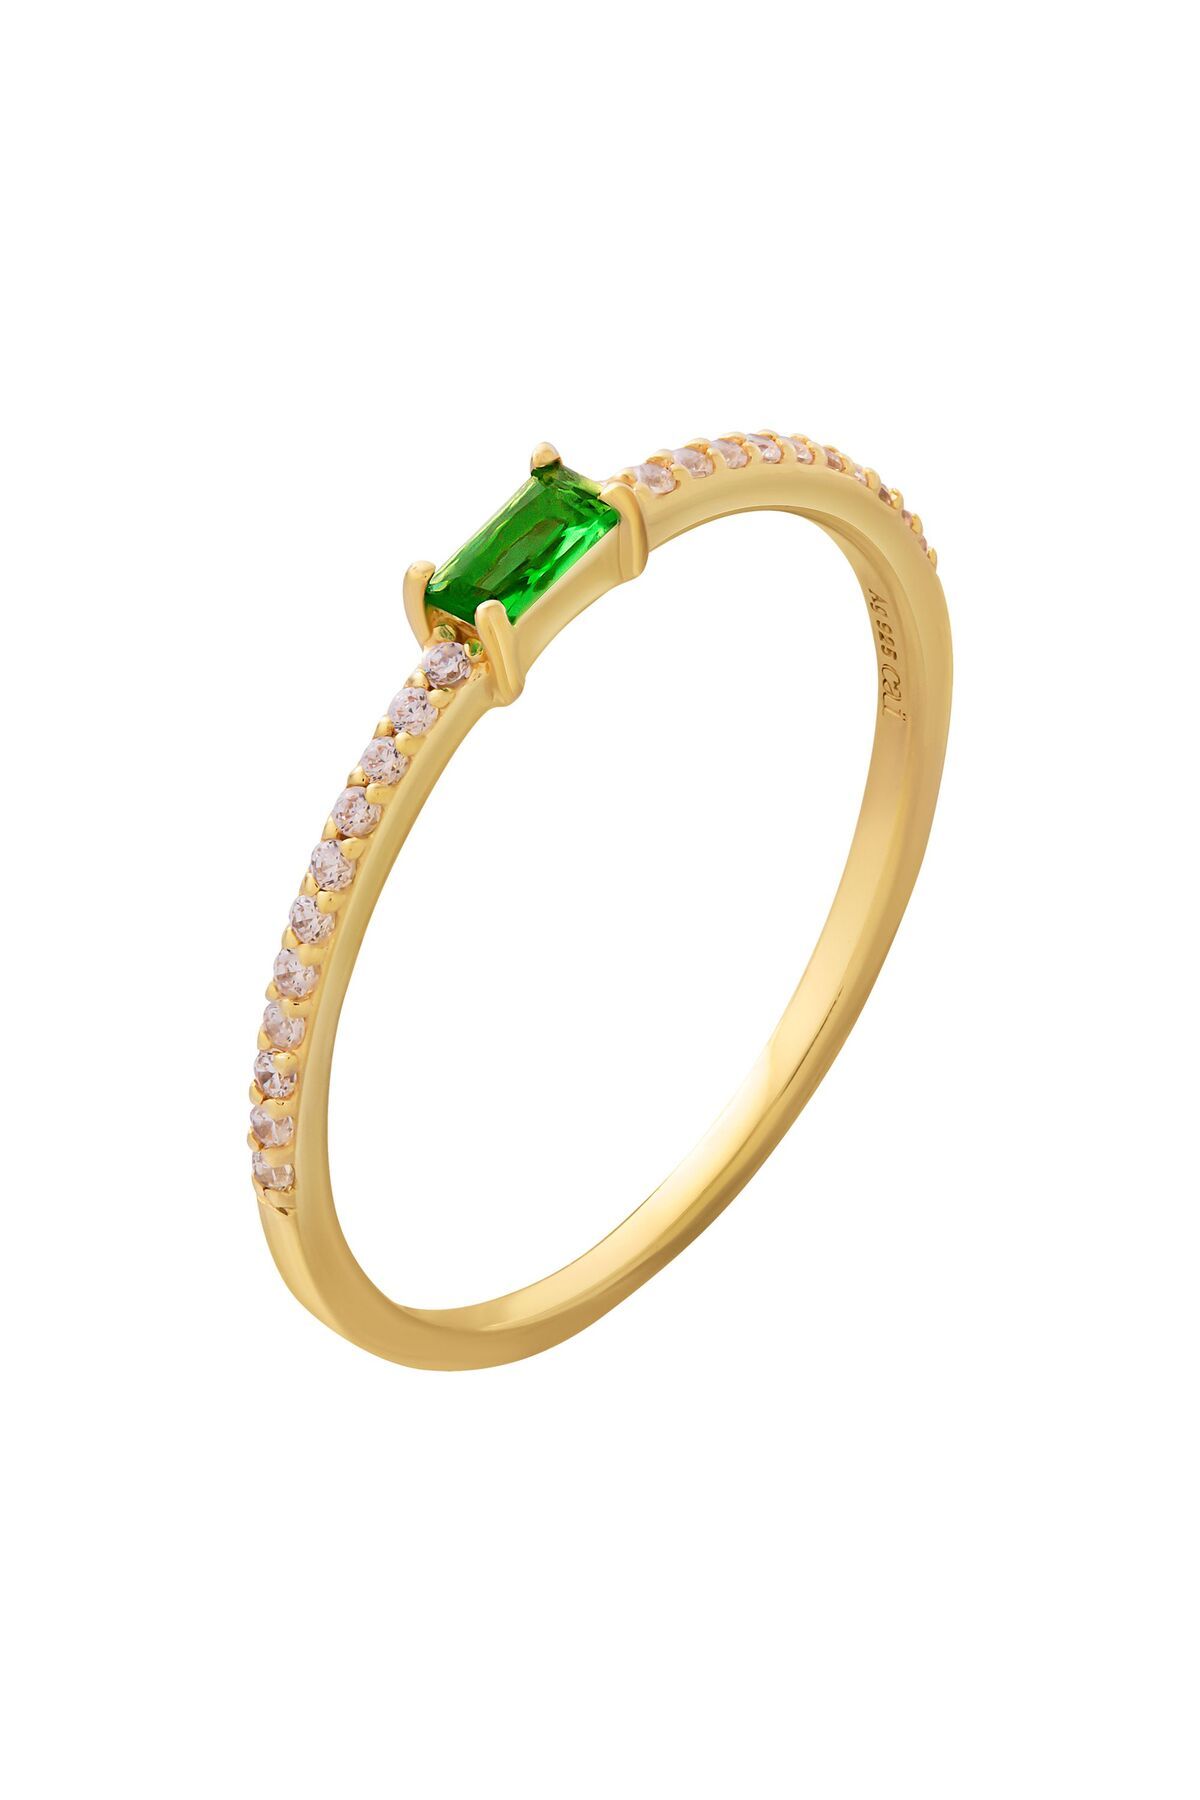 Caï - Echtstein Silber Trendyol Ring vergoldet 925